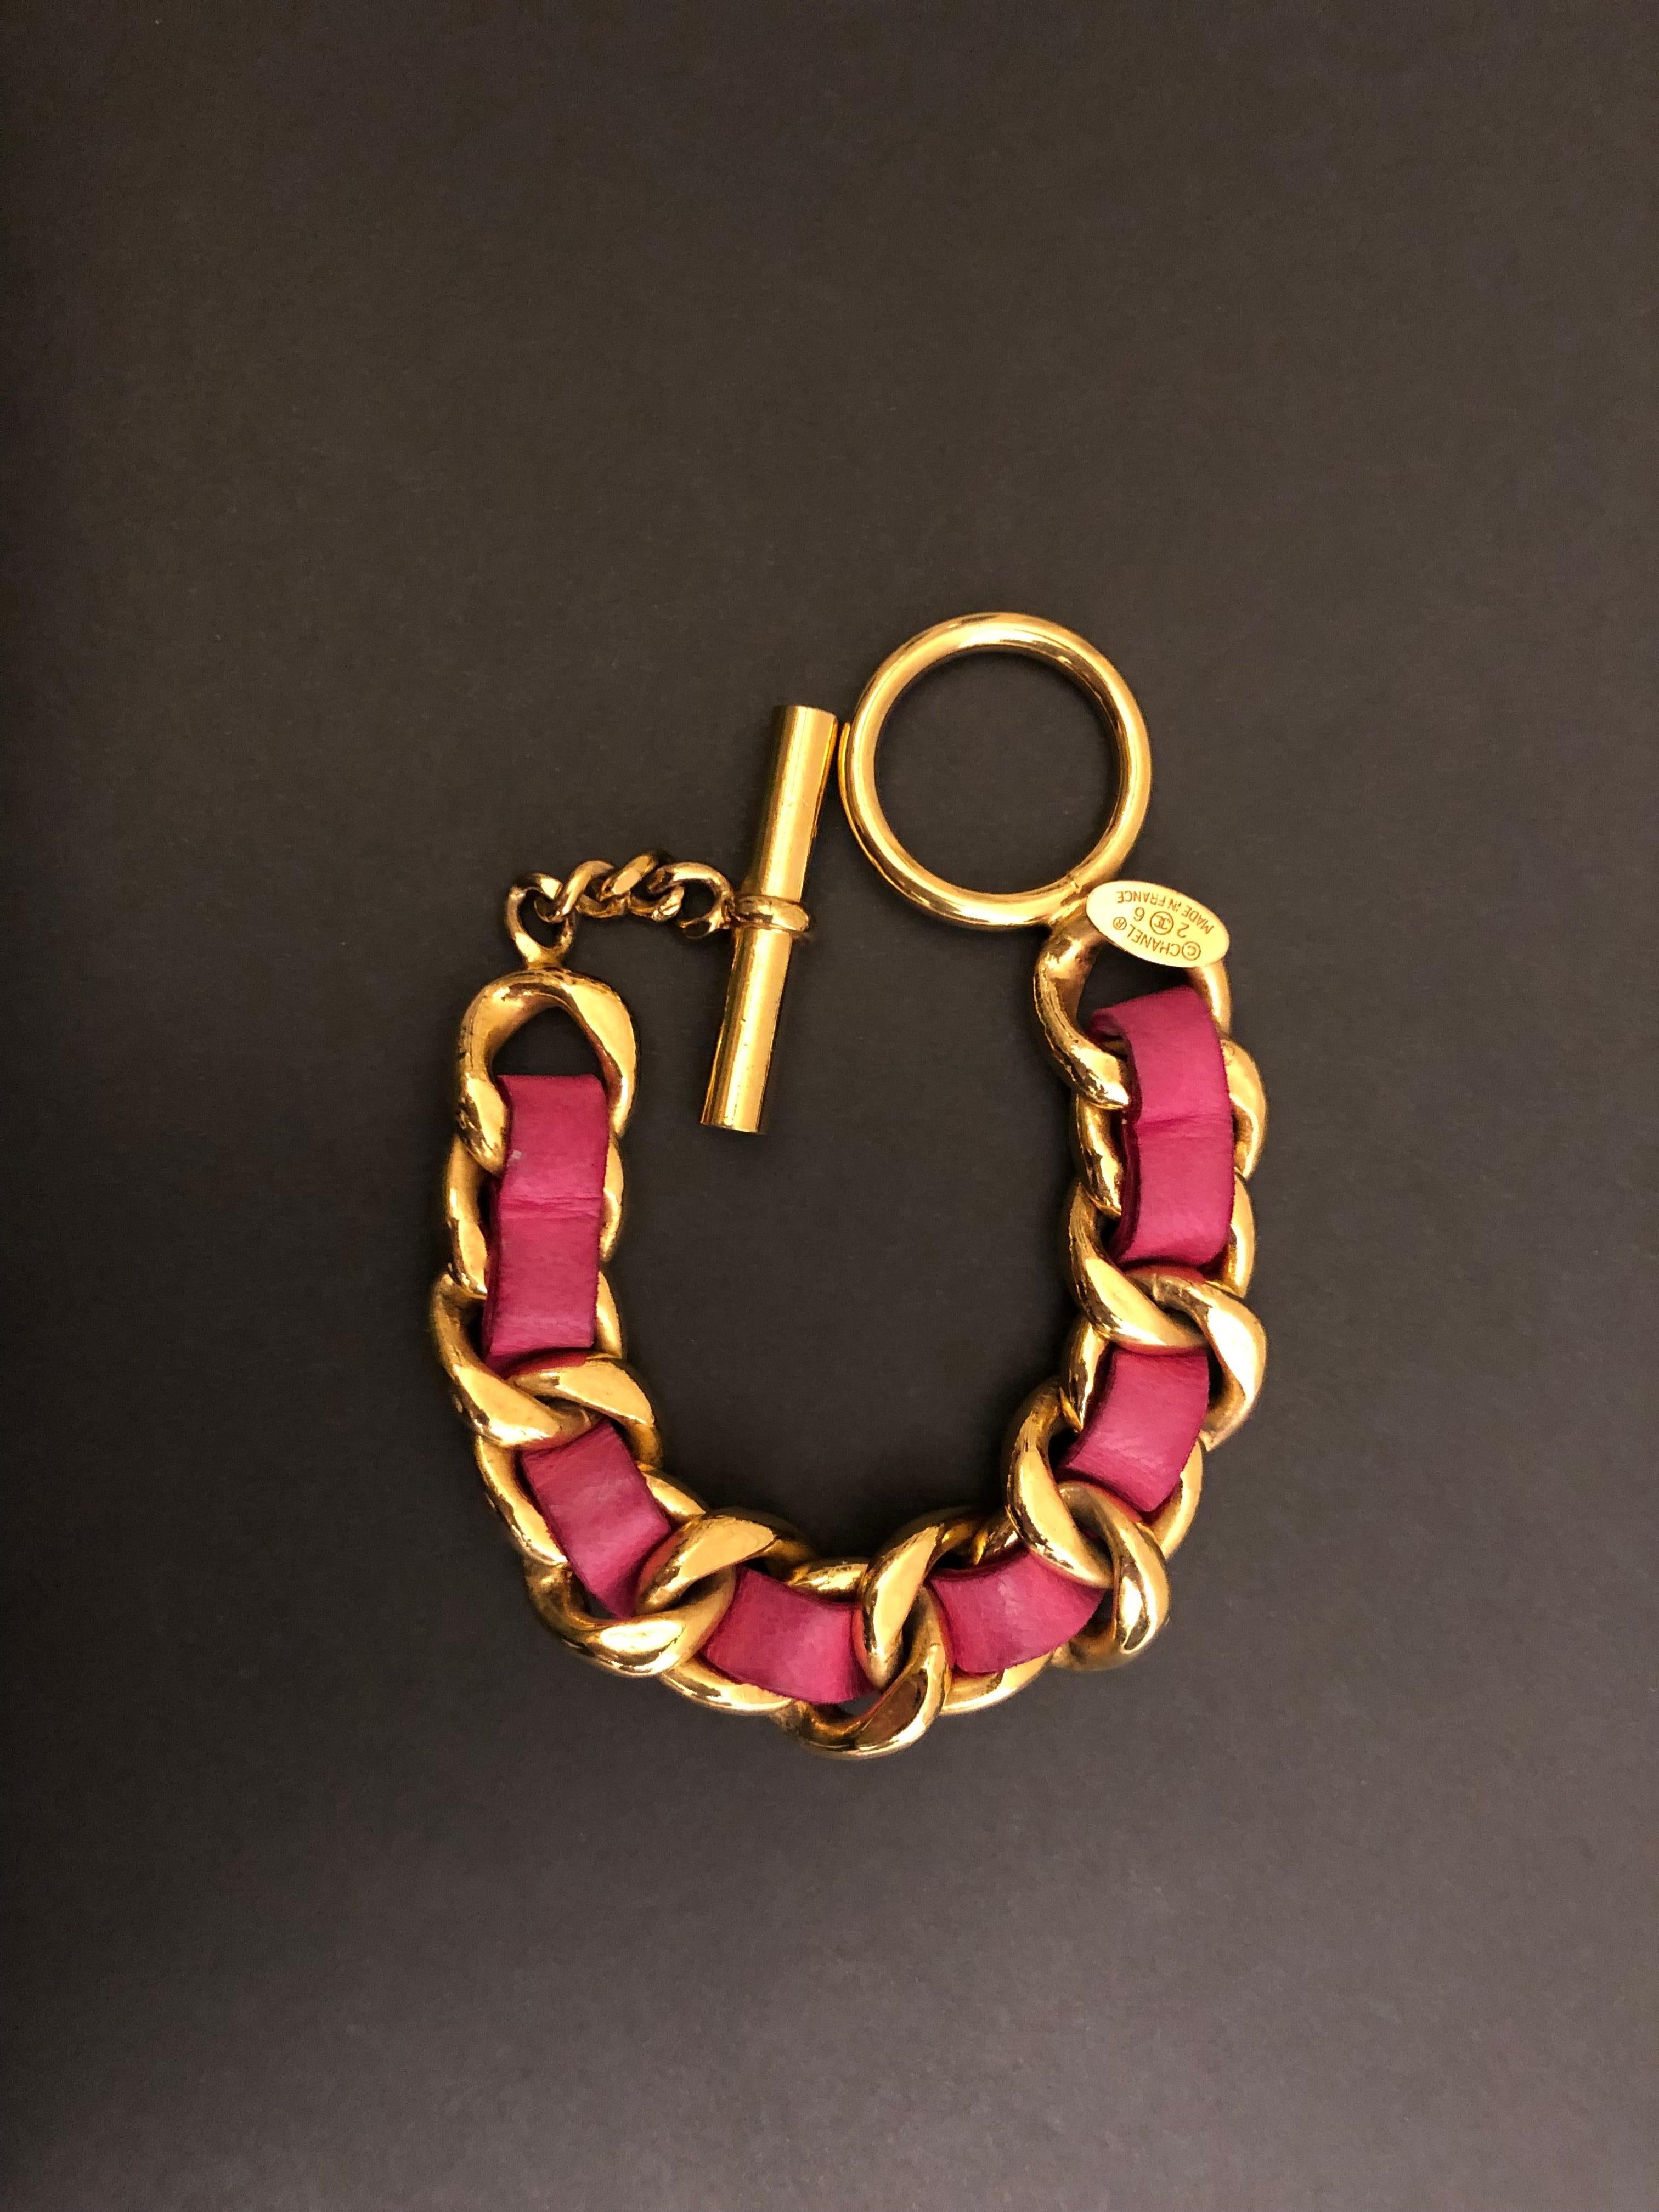 Vintage Chanel goldfarbenes Gliederarmband mit rosa Lammfell verflochten. Verstellbarer Knebelverschluss. Gestempelt CHANEL 26, hergestellt in Frankreich. Maße: ca. 16 - 18 cm. Wird mit Box geliefert.

Zustand: Einige Flecken und Verfärbungen auf